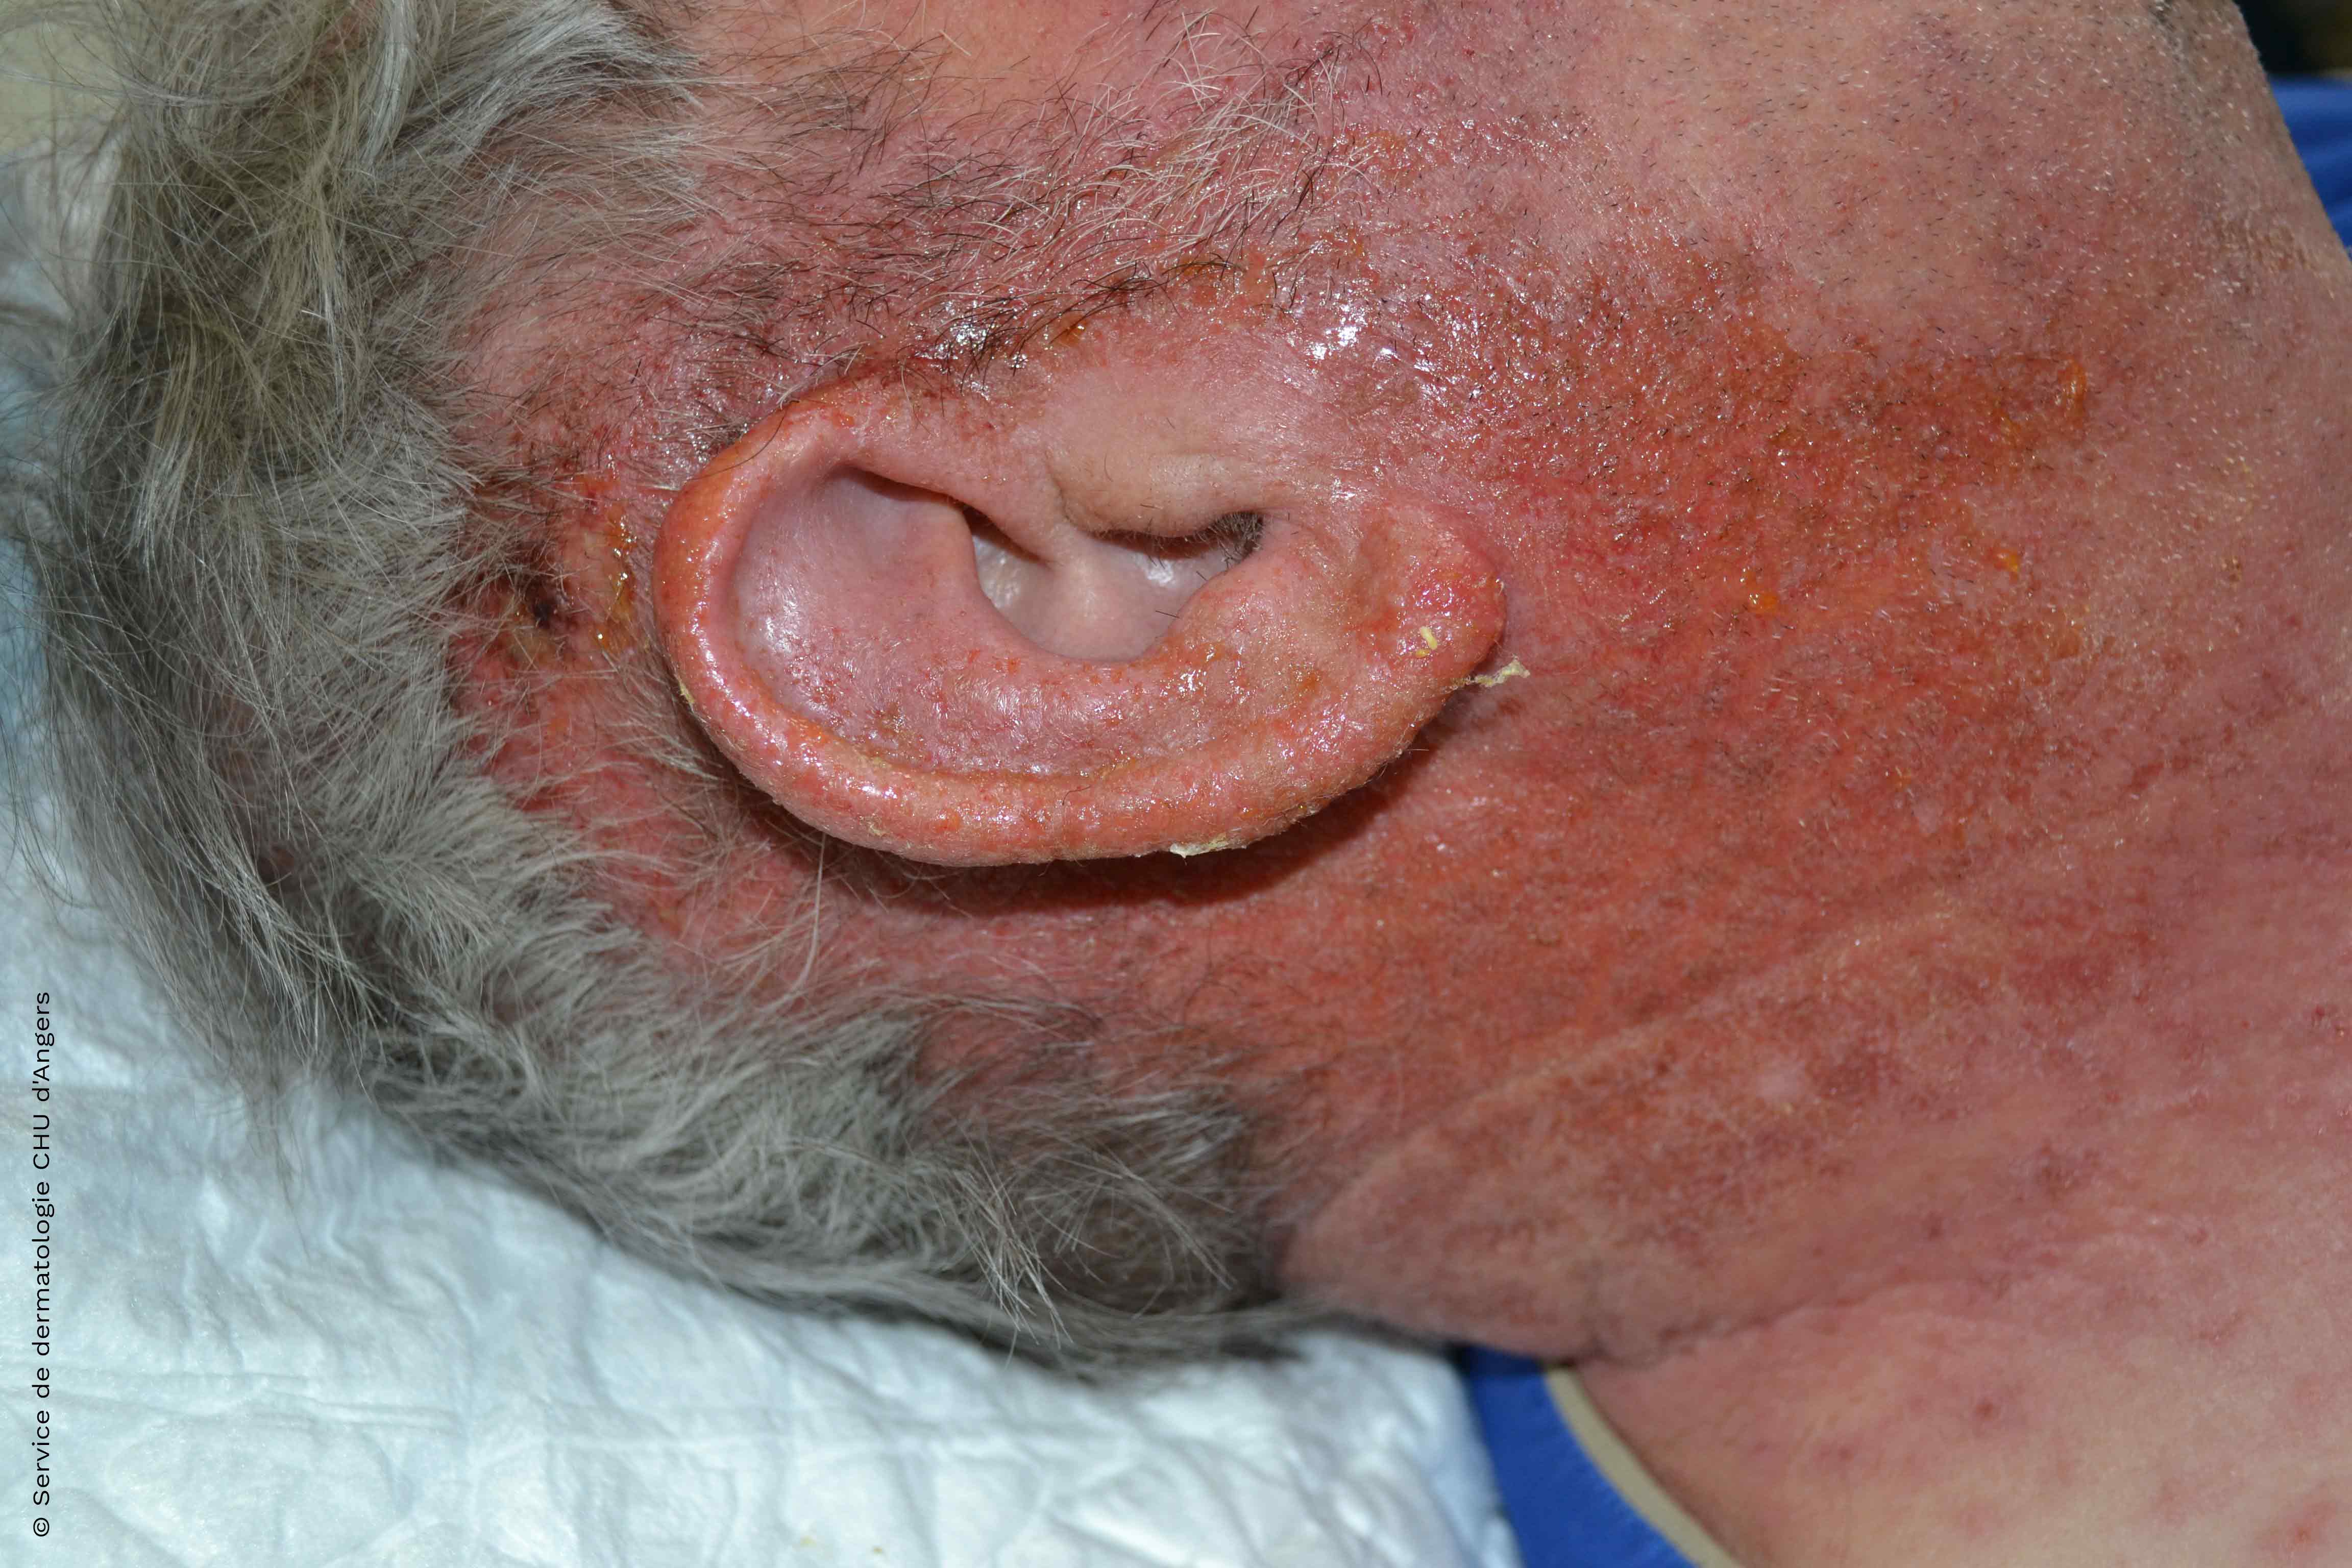 Akutes Kontaktekzem im Gesicht und am Ohr durch ein Antiseptikum